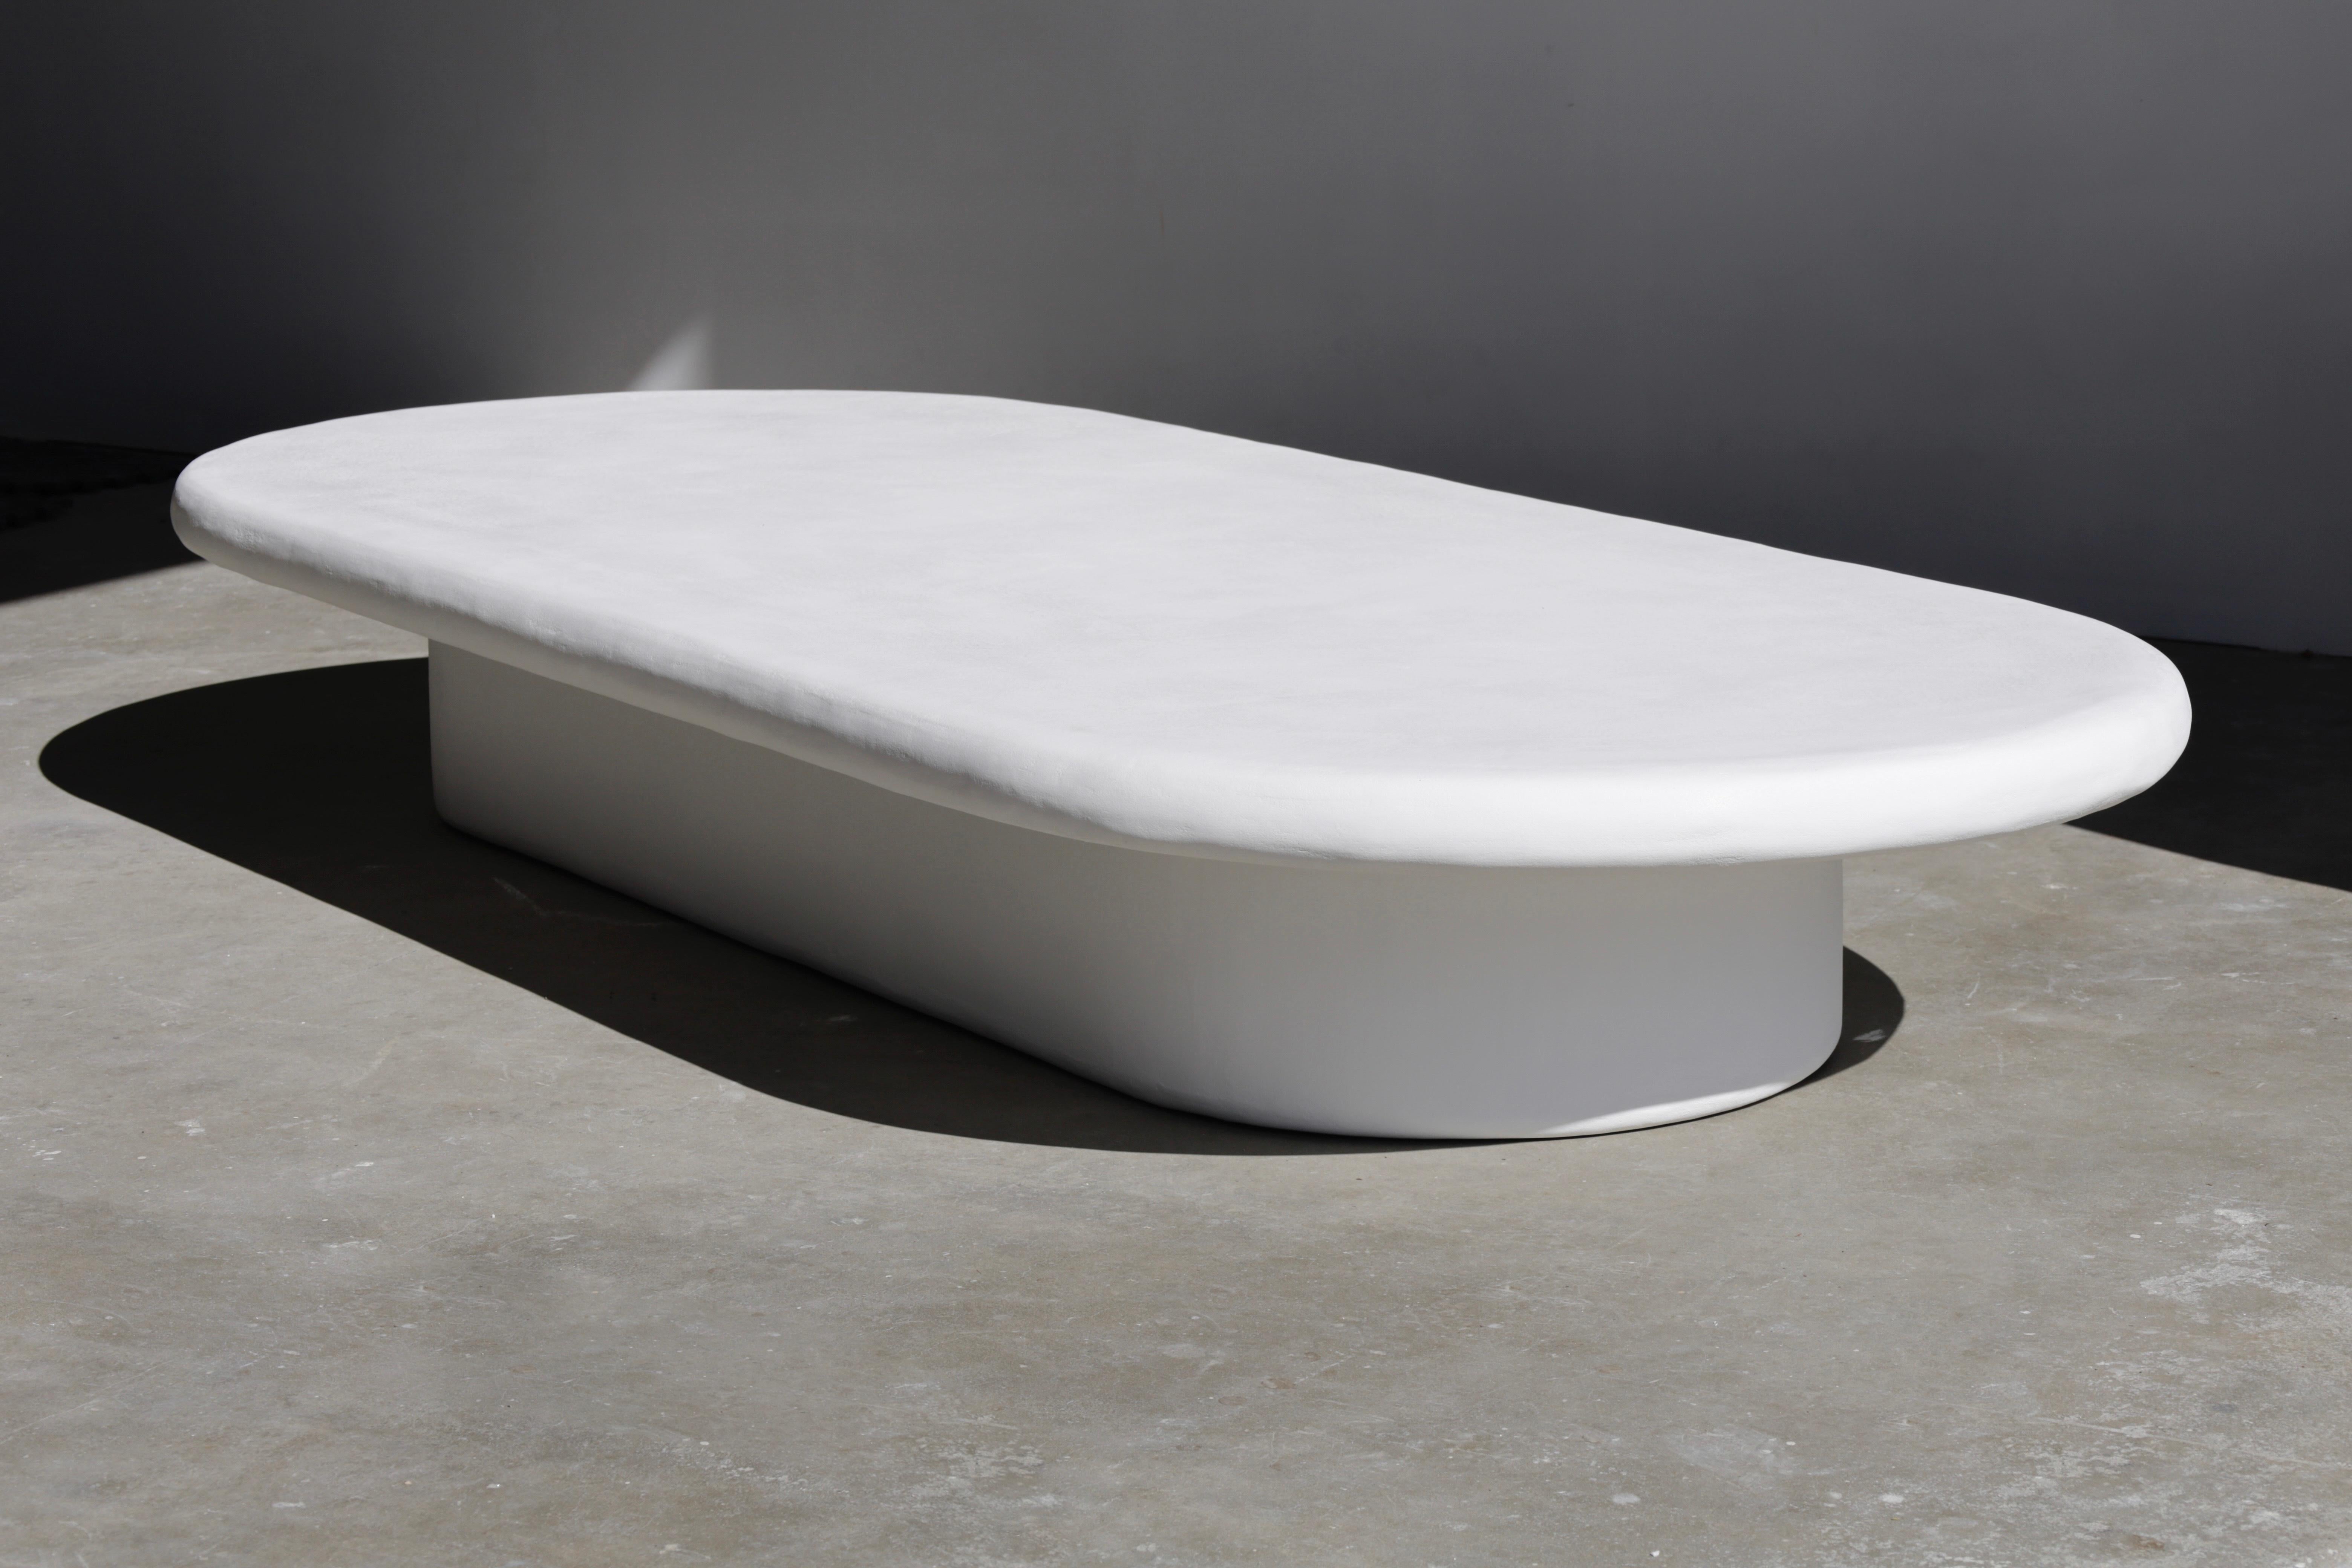 Notre table la plus populaire, simple et sculpturale, en blanc naturel.

Chaque pièce de öken house Studio est fabriquée à la main et sur commande par une petite équipe d'artisans du plâtre et nous essayons de faire appel à des fournisseurs locaux